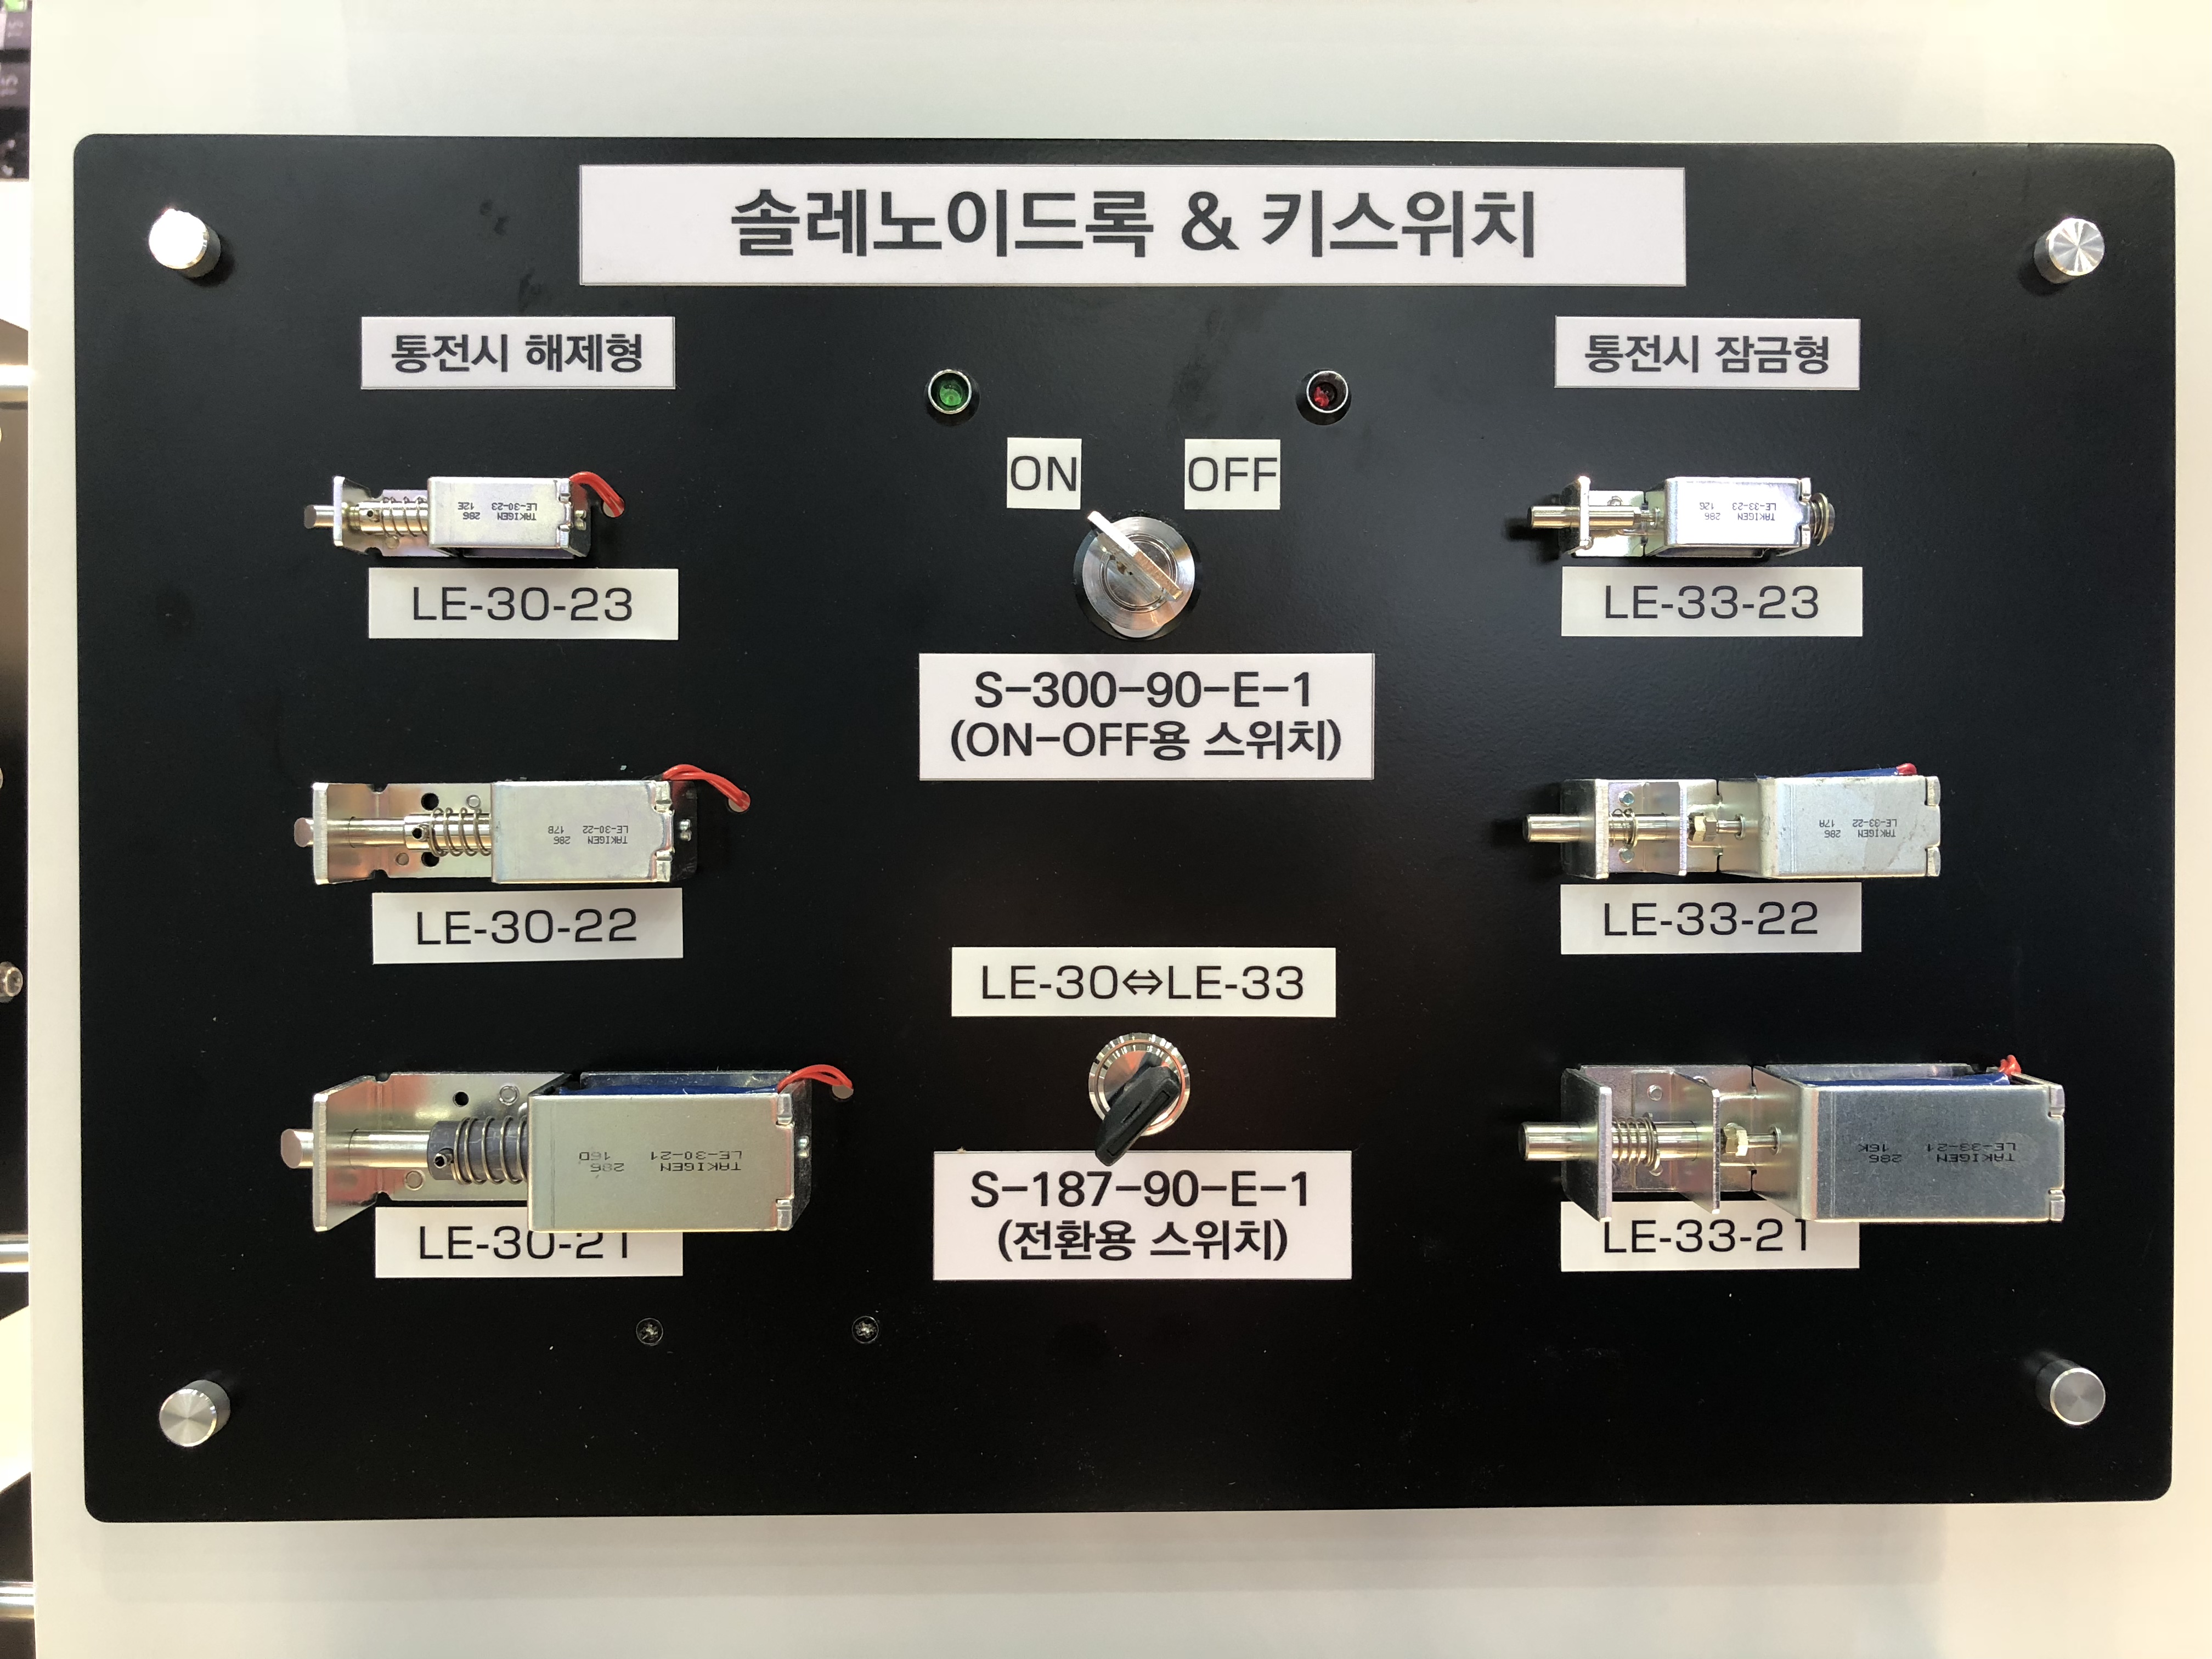 SEMICON KOREAに出展しました | 「タキレポ」産業用金物・工業用金物の「タキゲン」が発信するメディア